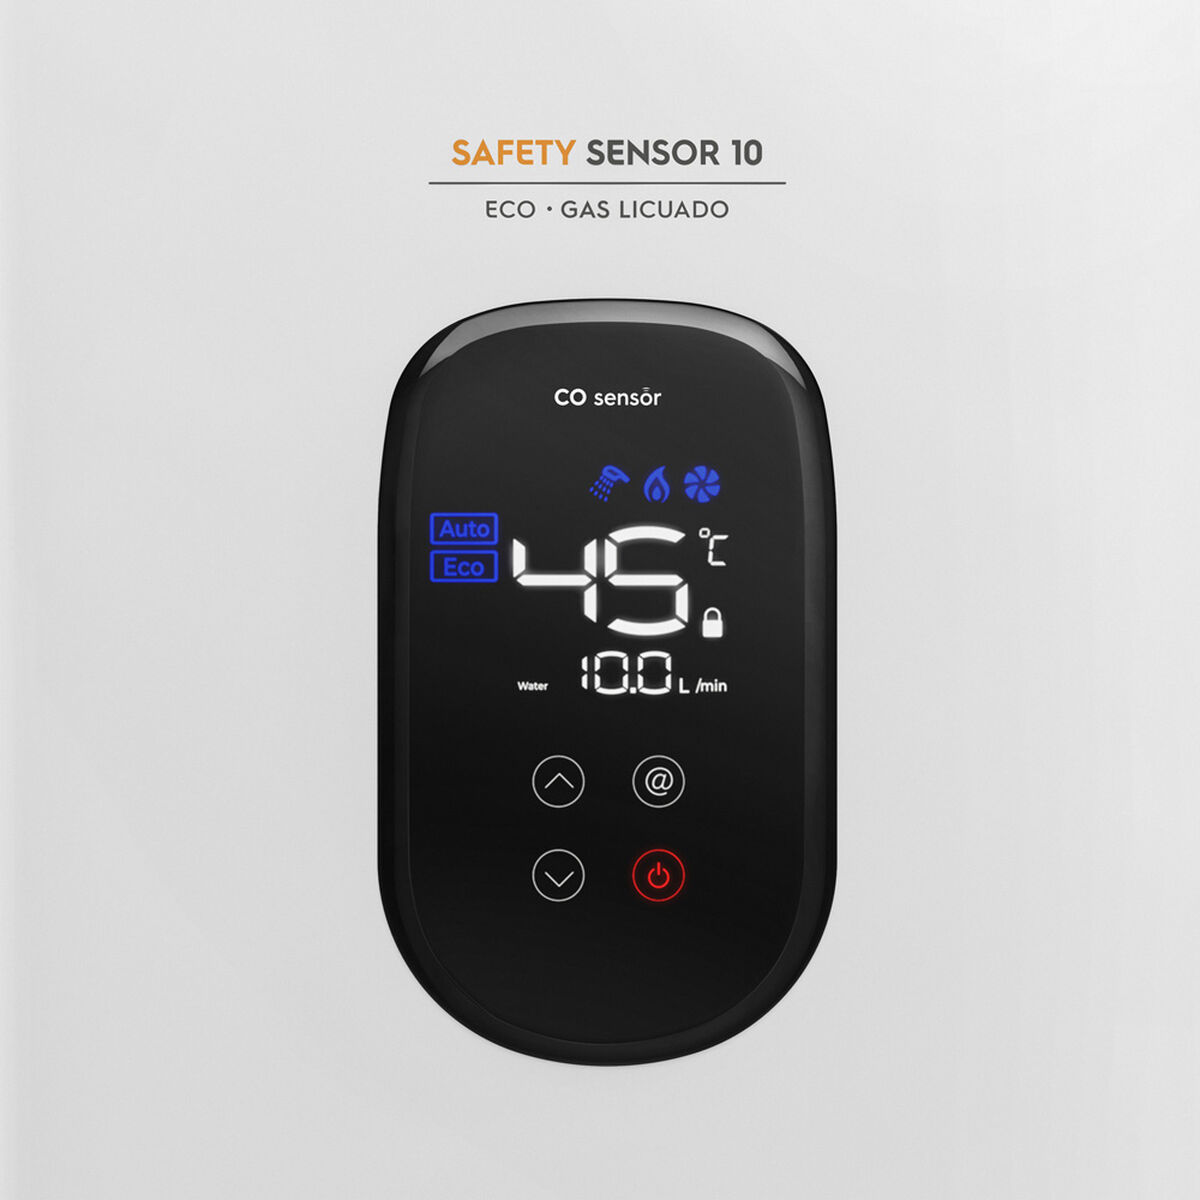 Calefont Mademsa Safety Sensor 10 Eco GL 10 Litros Gas Licuado